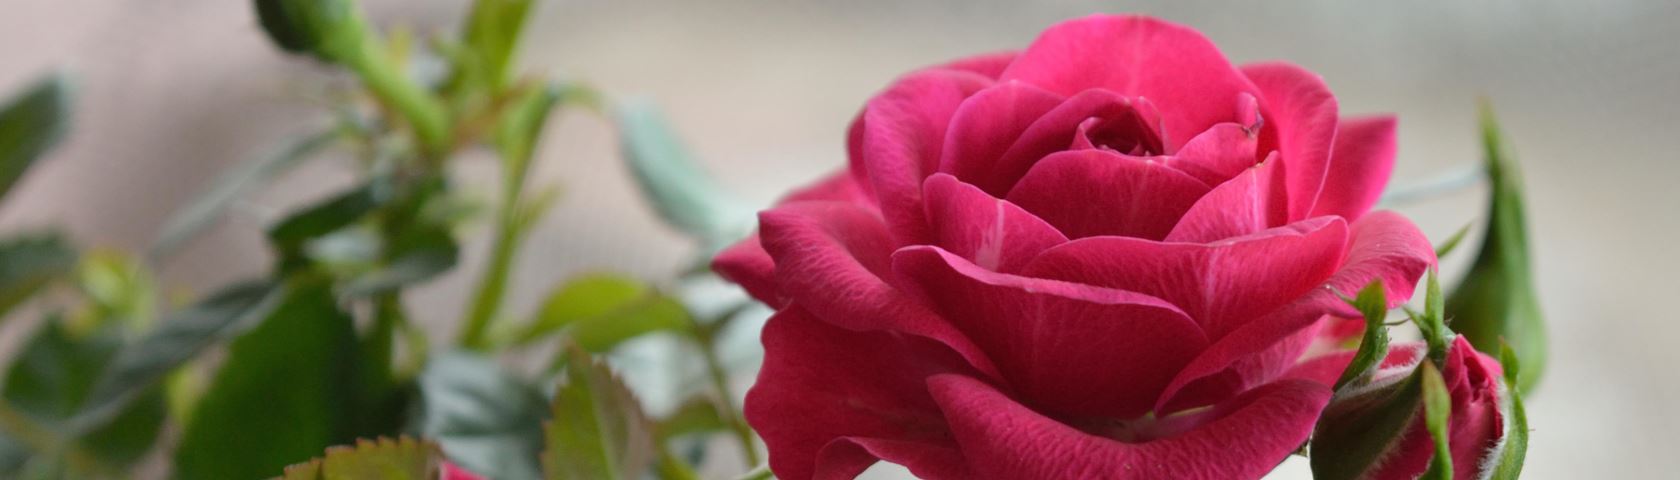 Rose Roses